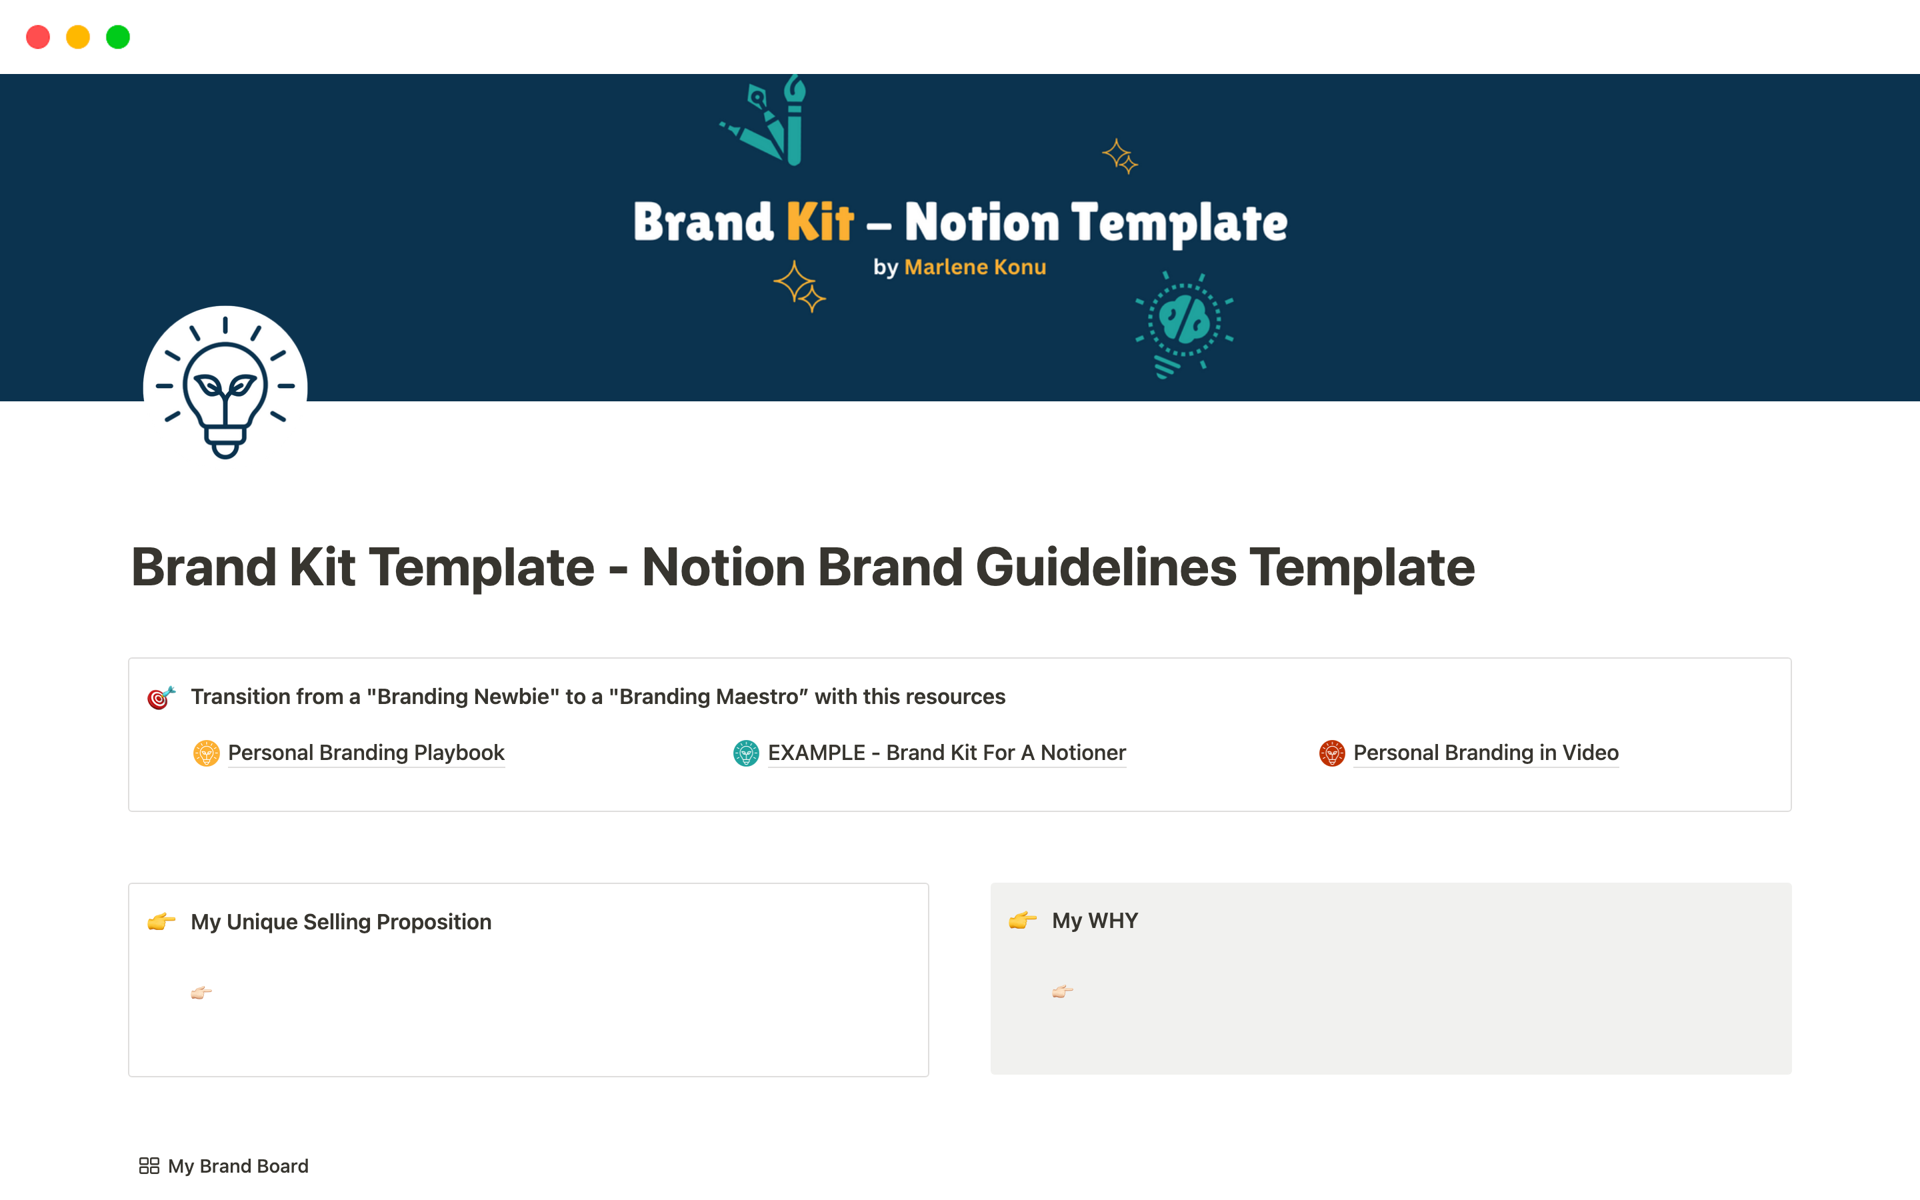 Uma prévia do modelo para Brand Kit Template - Notion Brand Guidelines Template